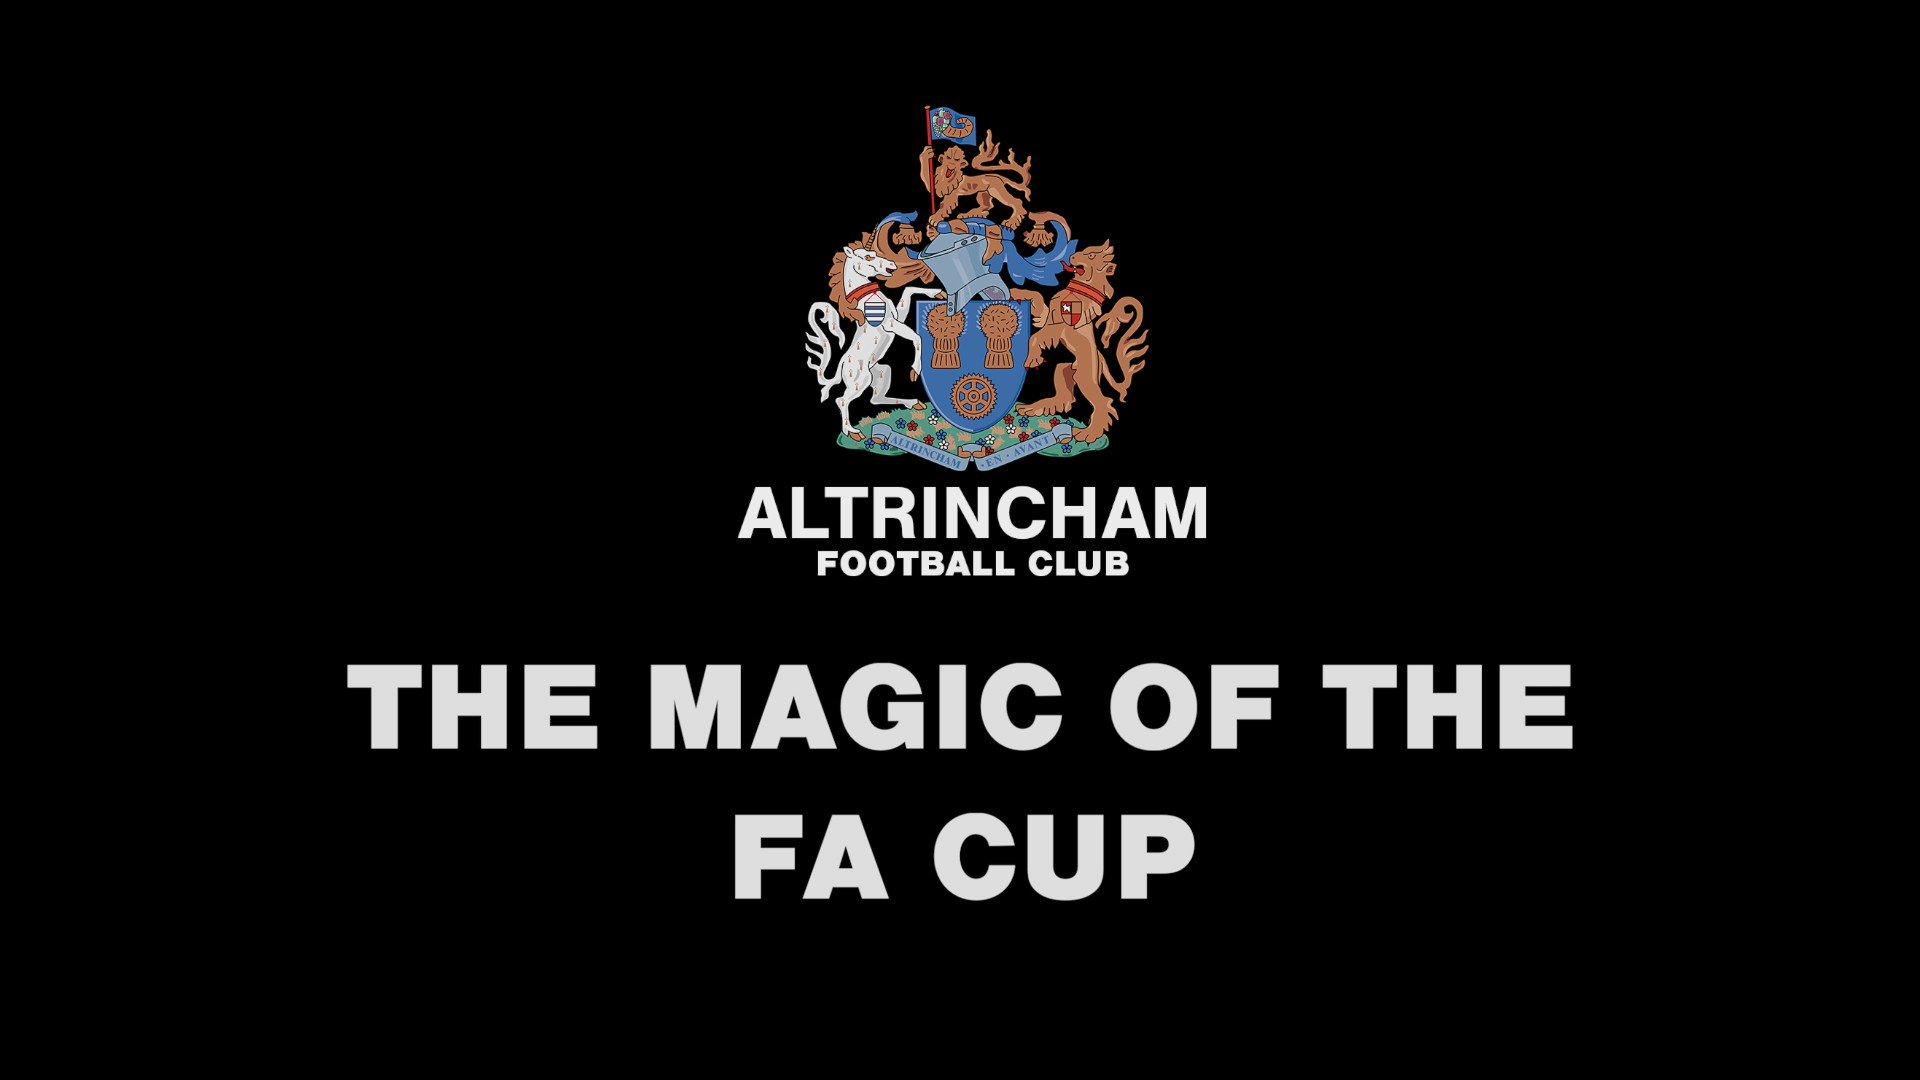 Altrincham Football Club – Altrincham FC